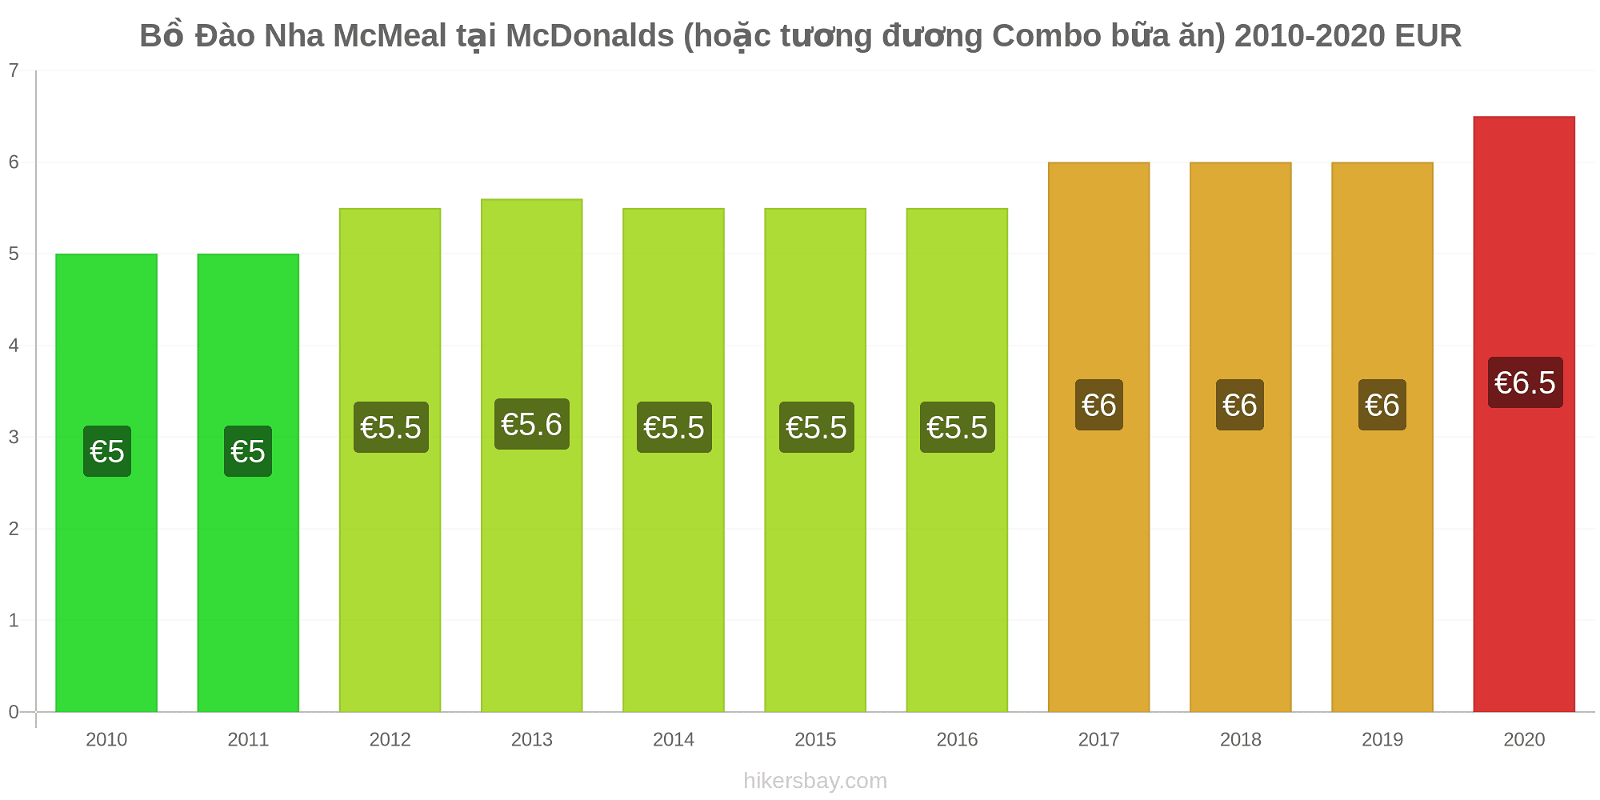 Bồ Đào Nha thay đổi giá McMeal tại McDonalds (hoặc tương đương Combo bữa ăn) hikersbay.com